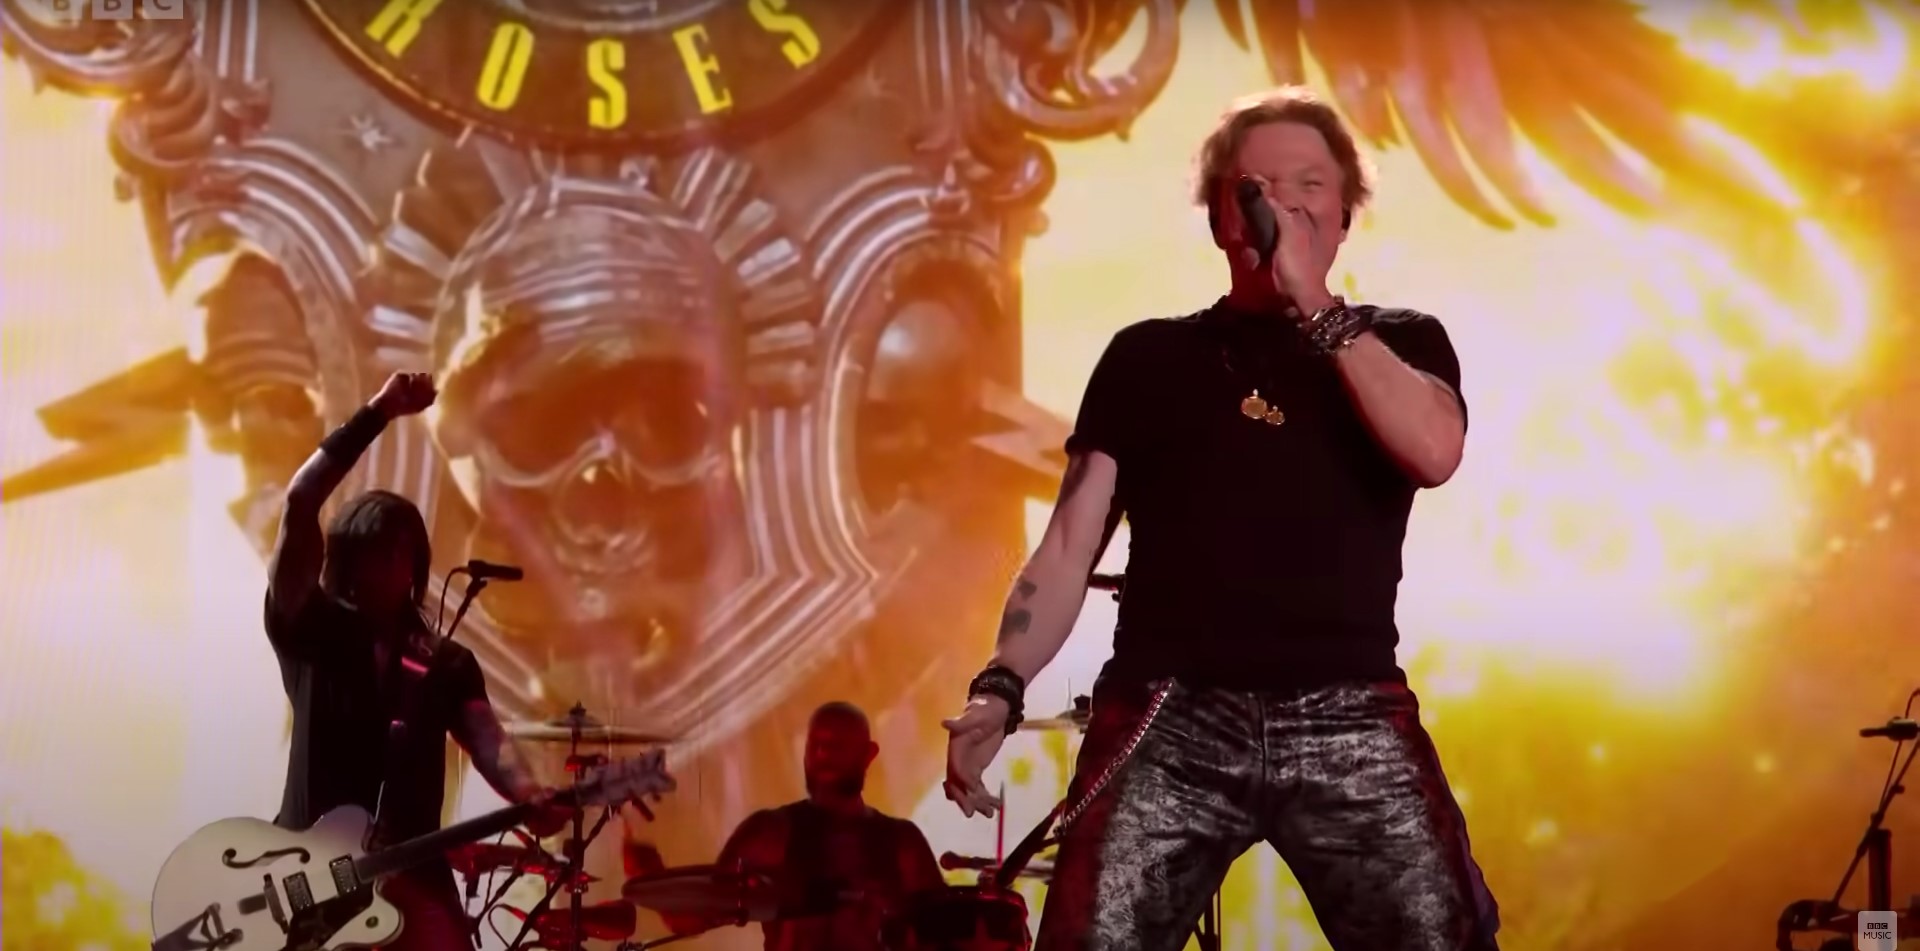 🎸 Нова пісня Guns N' Roses потрапила до мережі завдяки цифровим музичним автоматам